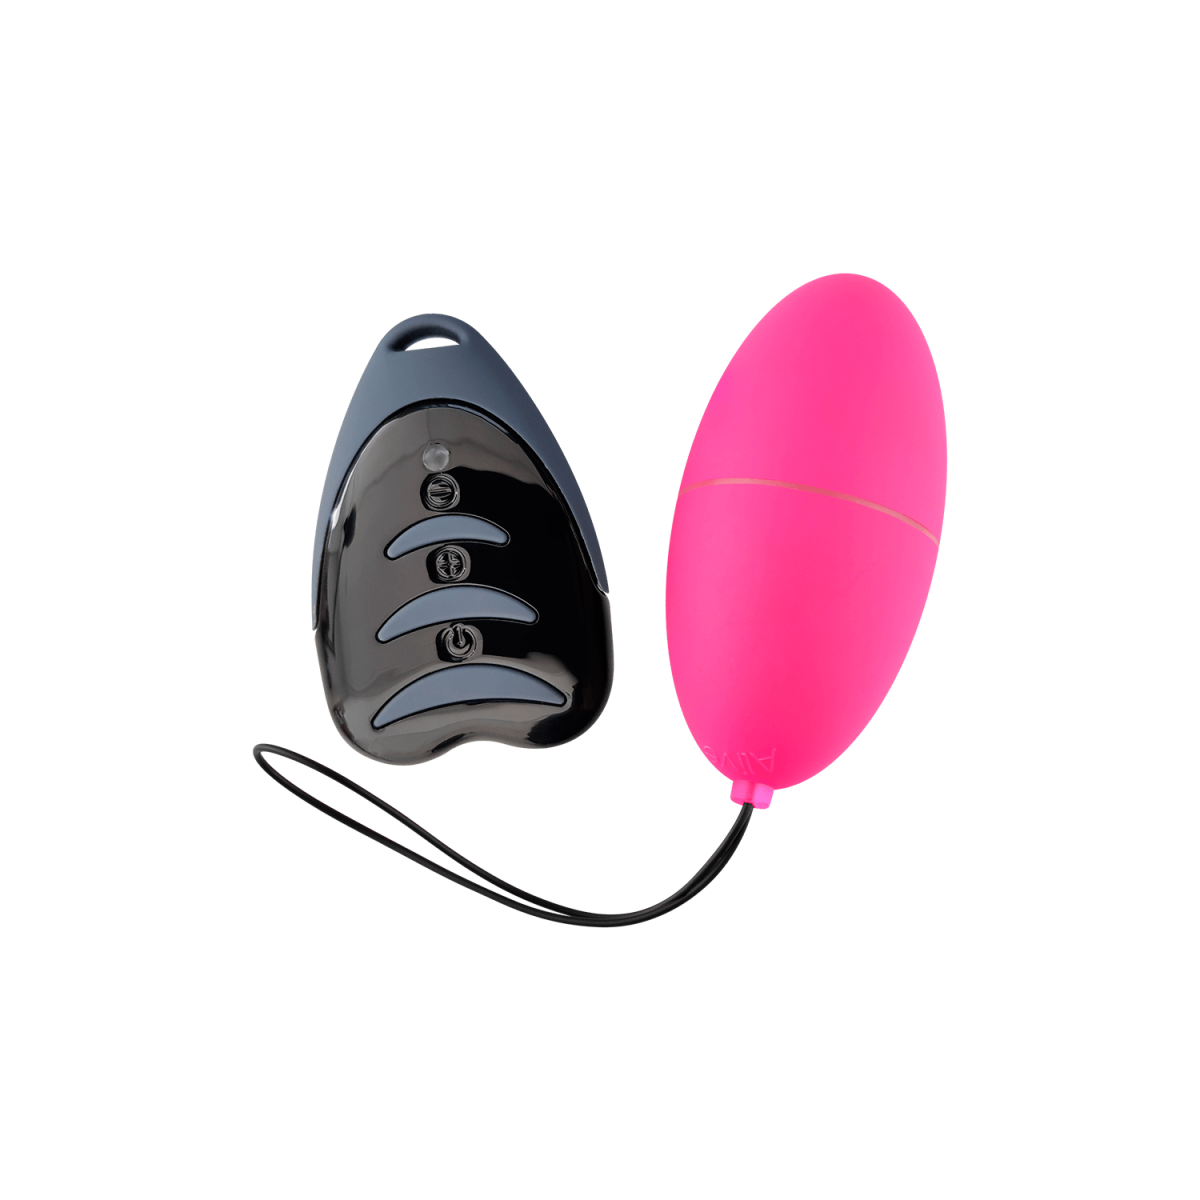 Ovetto vaginale vibrante Magic Egg 3.0 pink